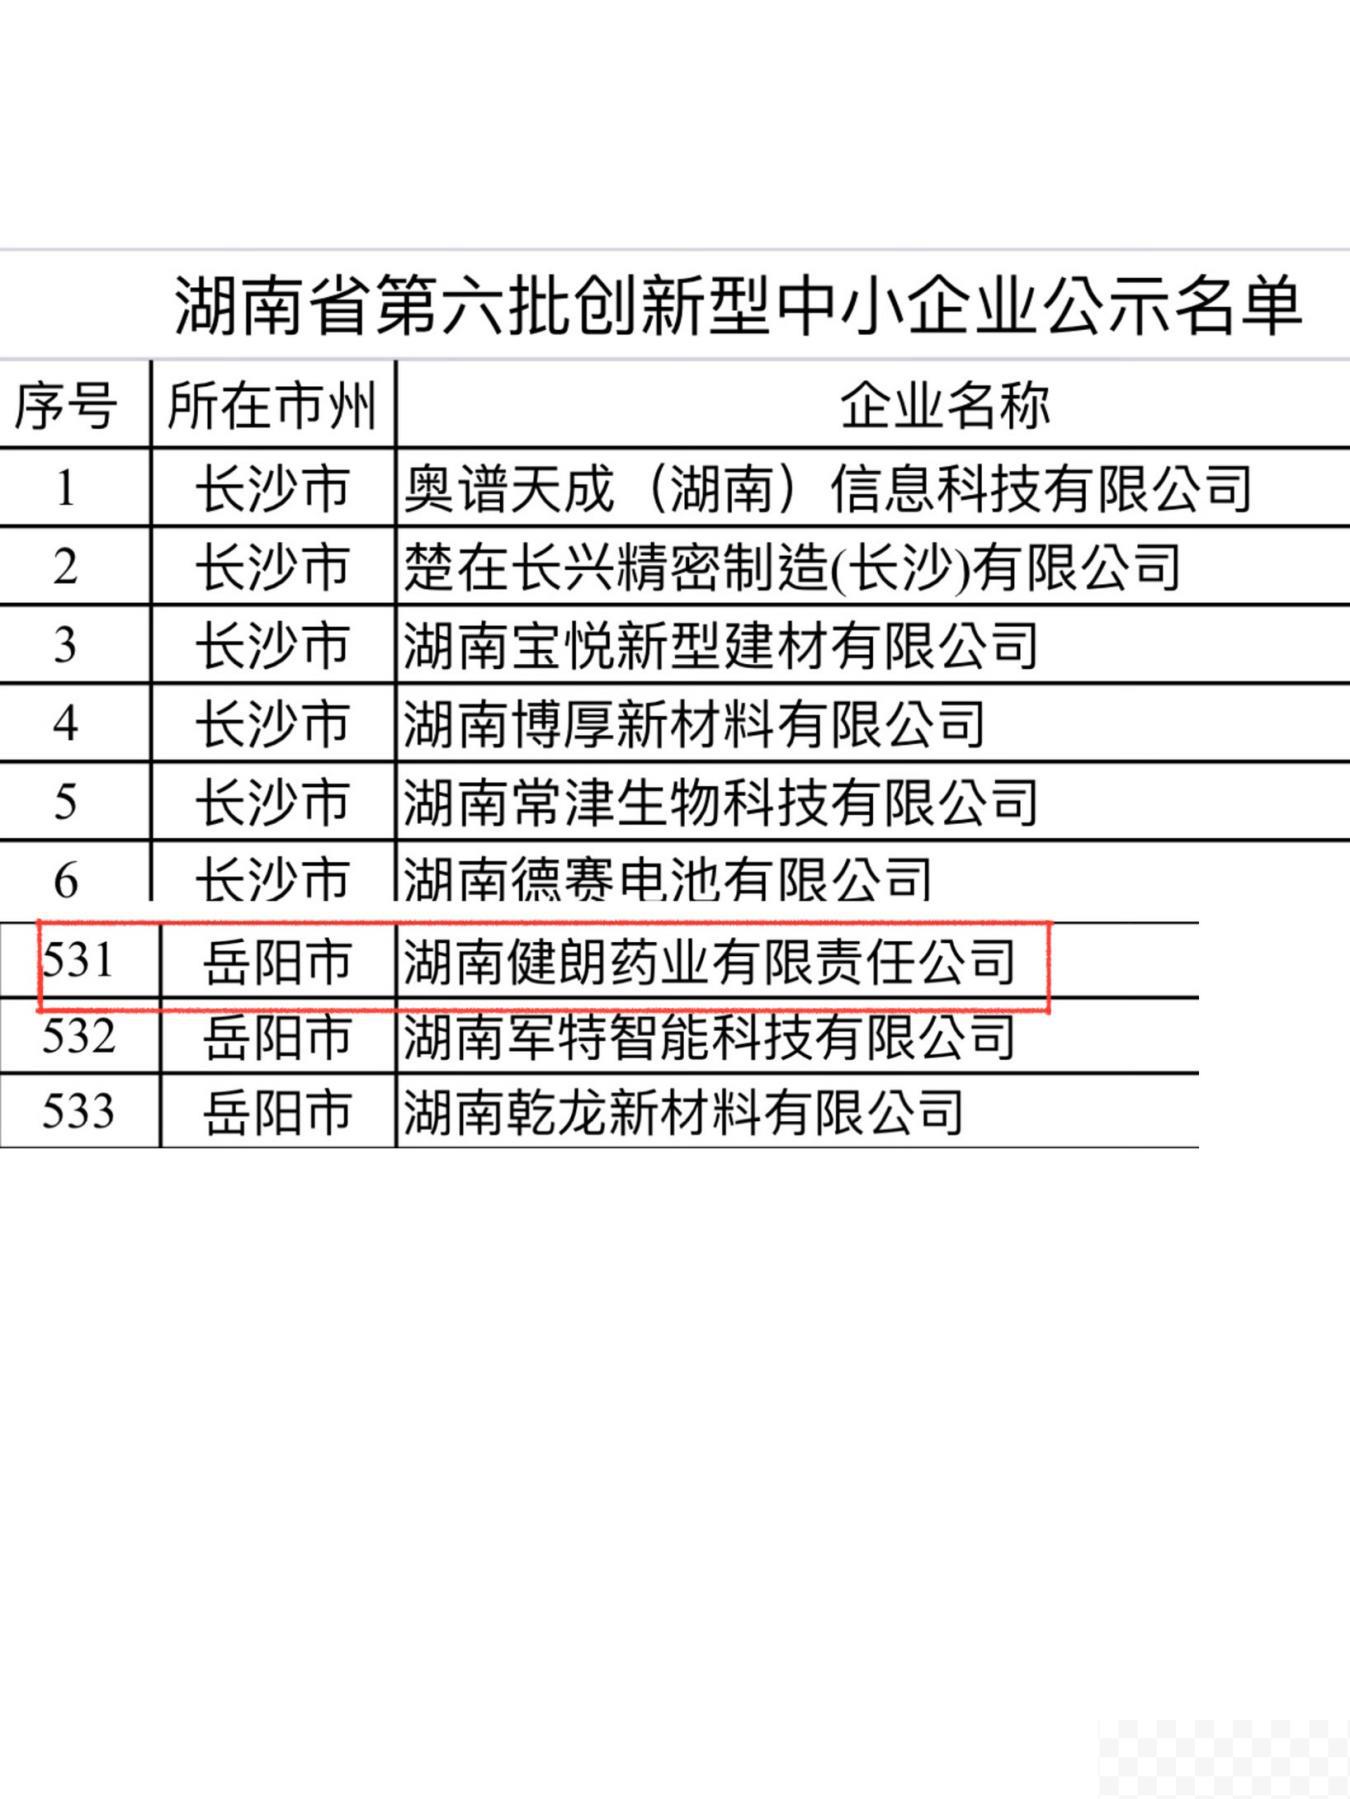 健朗药业被评为湖南省第六批创新型中小企业